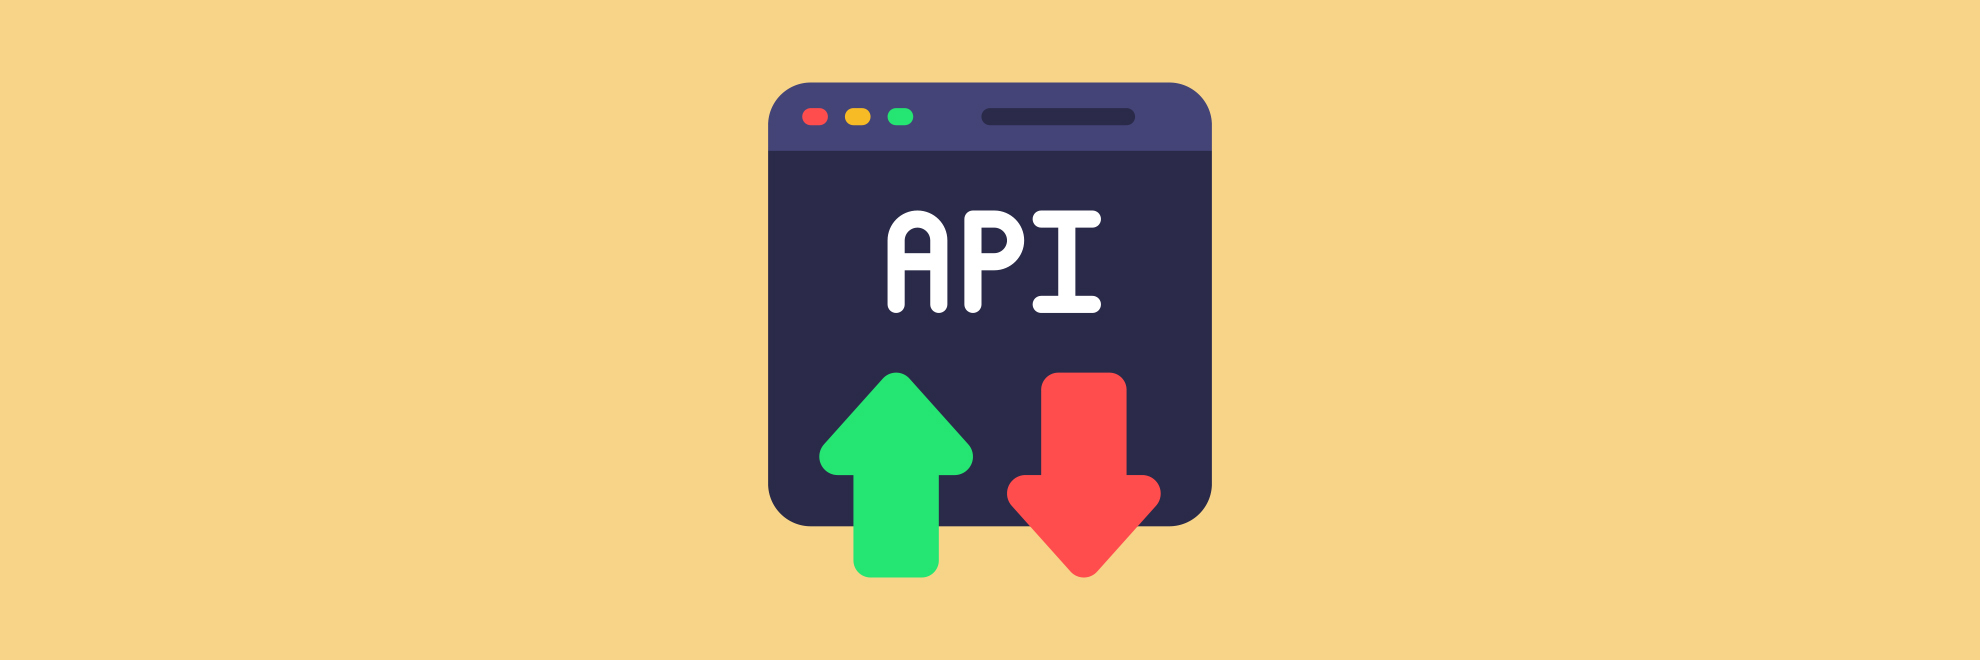 Illustration showing the API icon on orange background. 